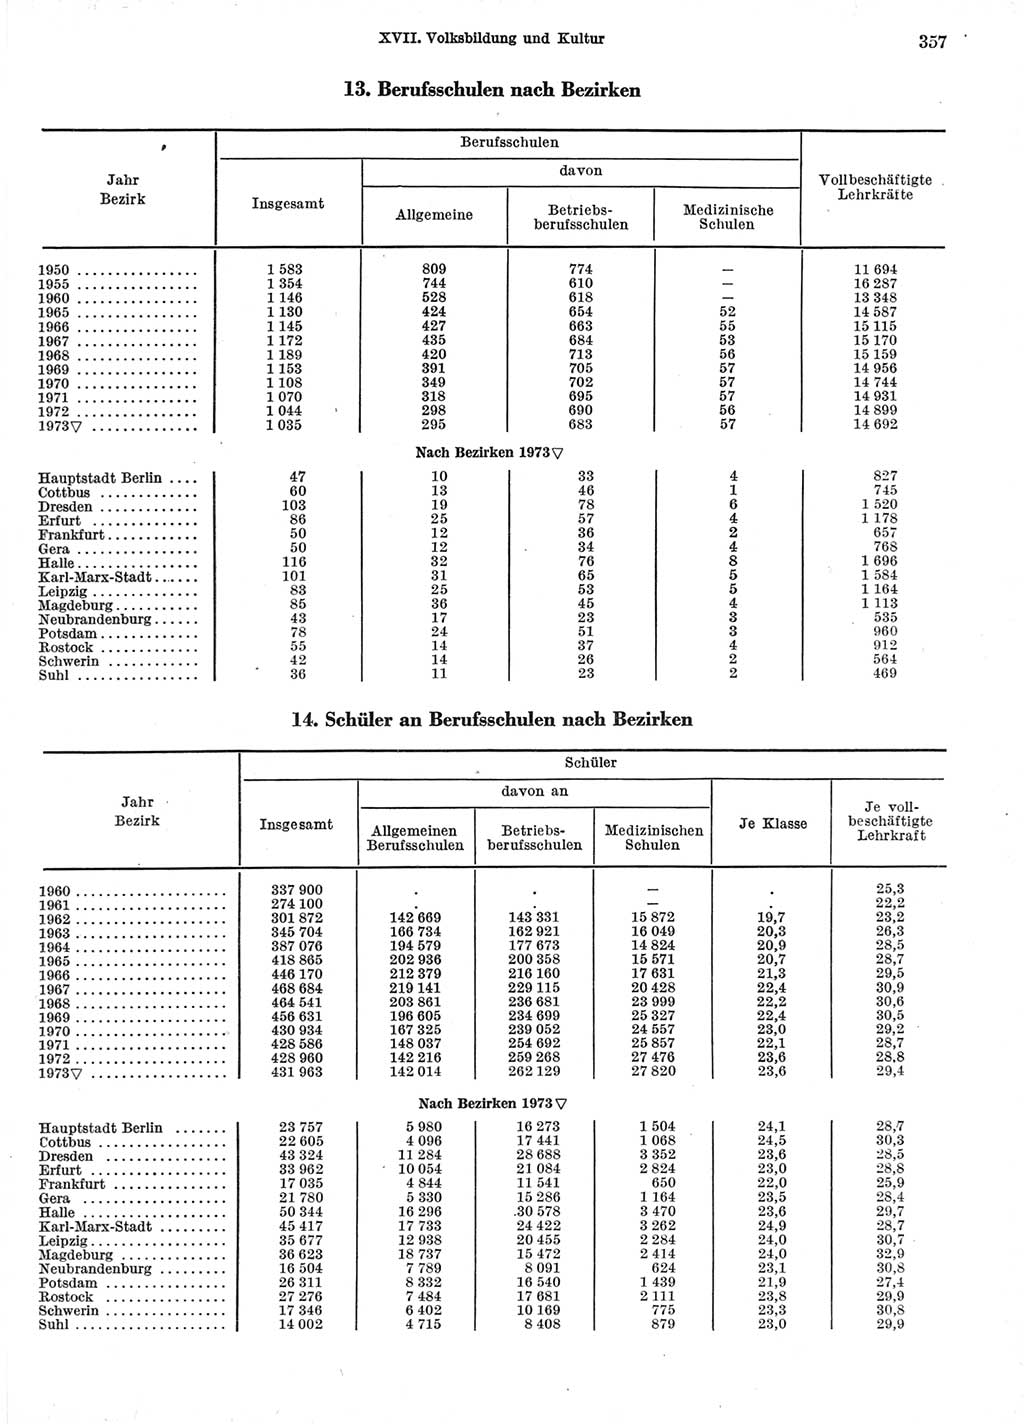 Statistisches Jahrbuch der Deutschen Demokratischen Republik (DDR) 1974, Seite 357 (Stat. Jb. DDR 1974, S. 357)